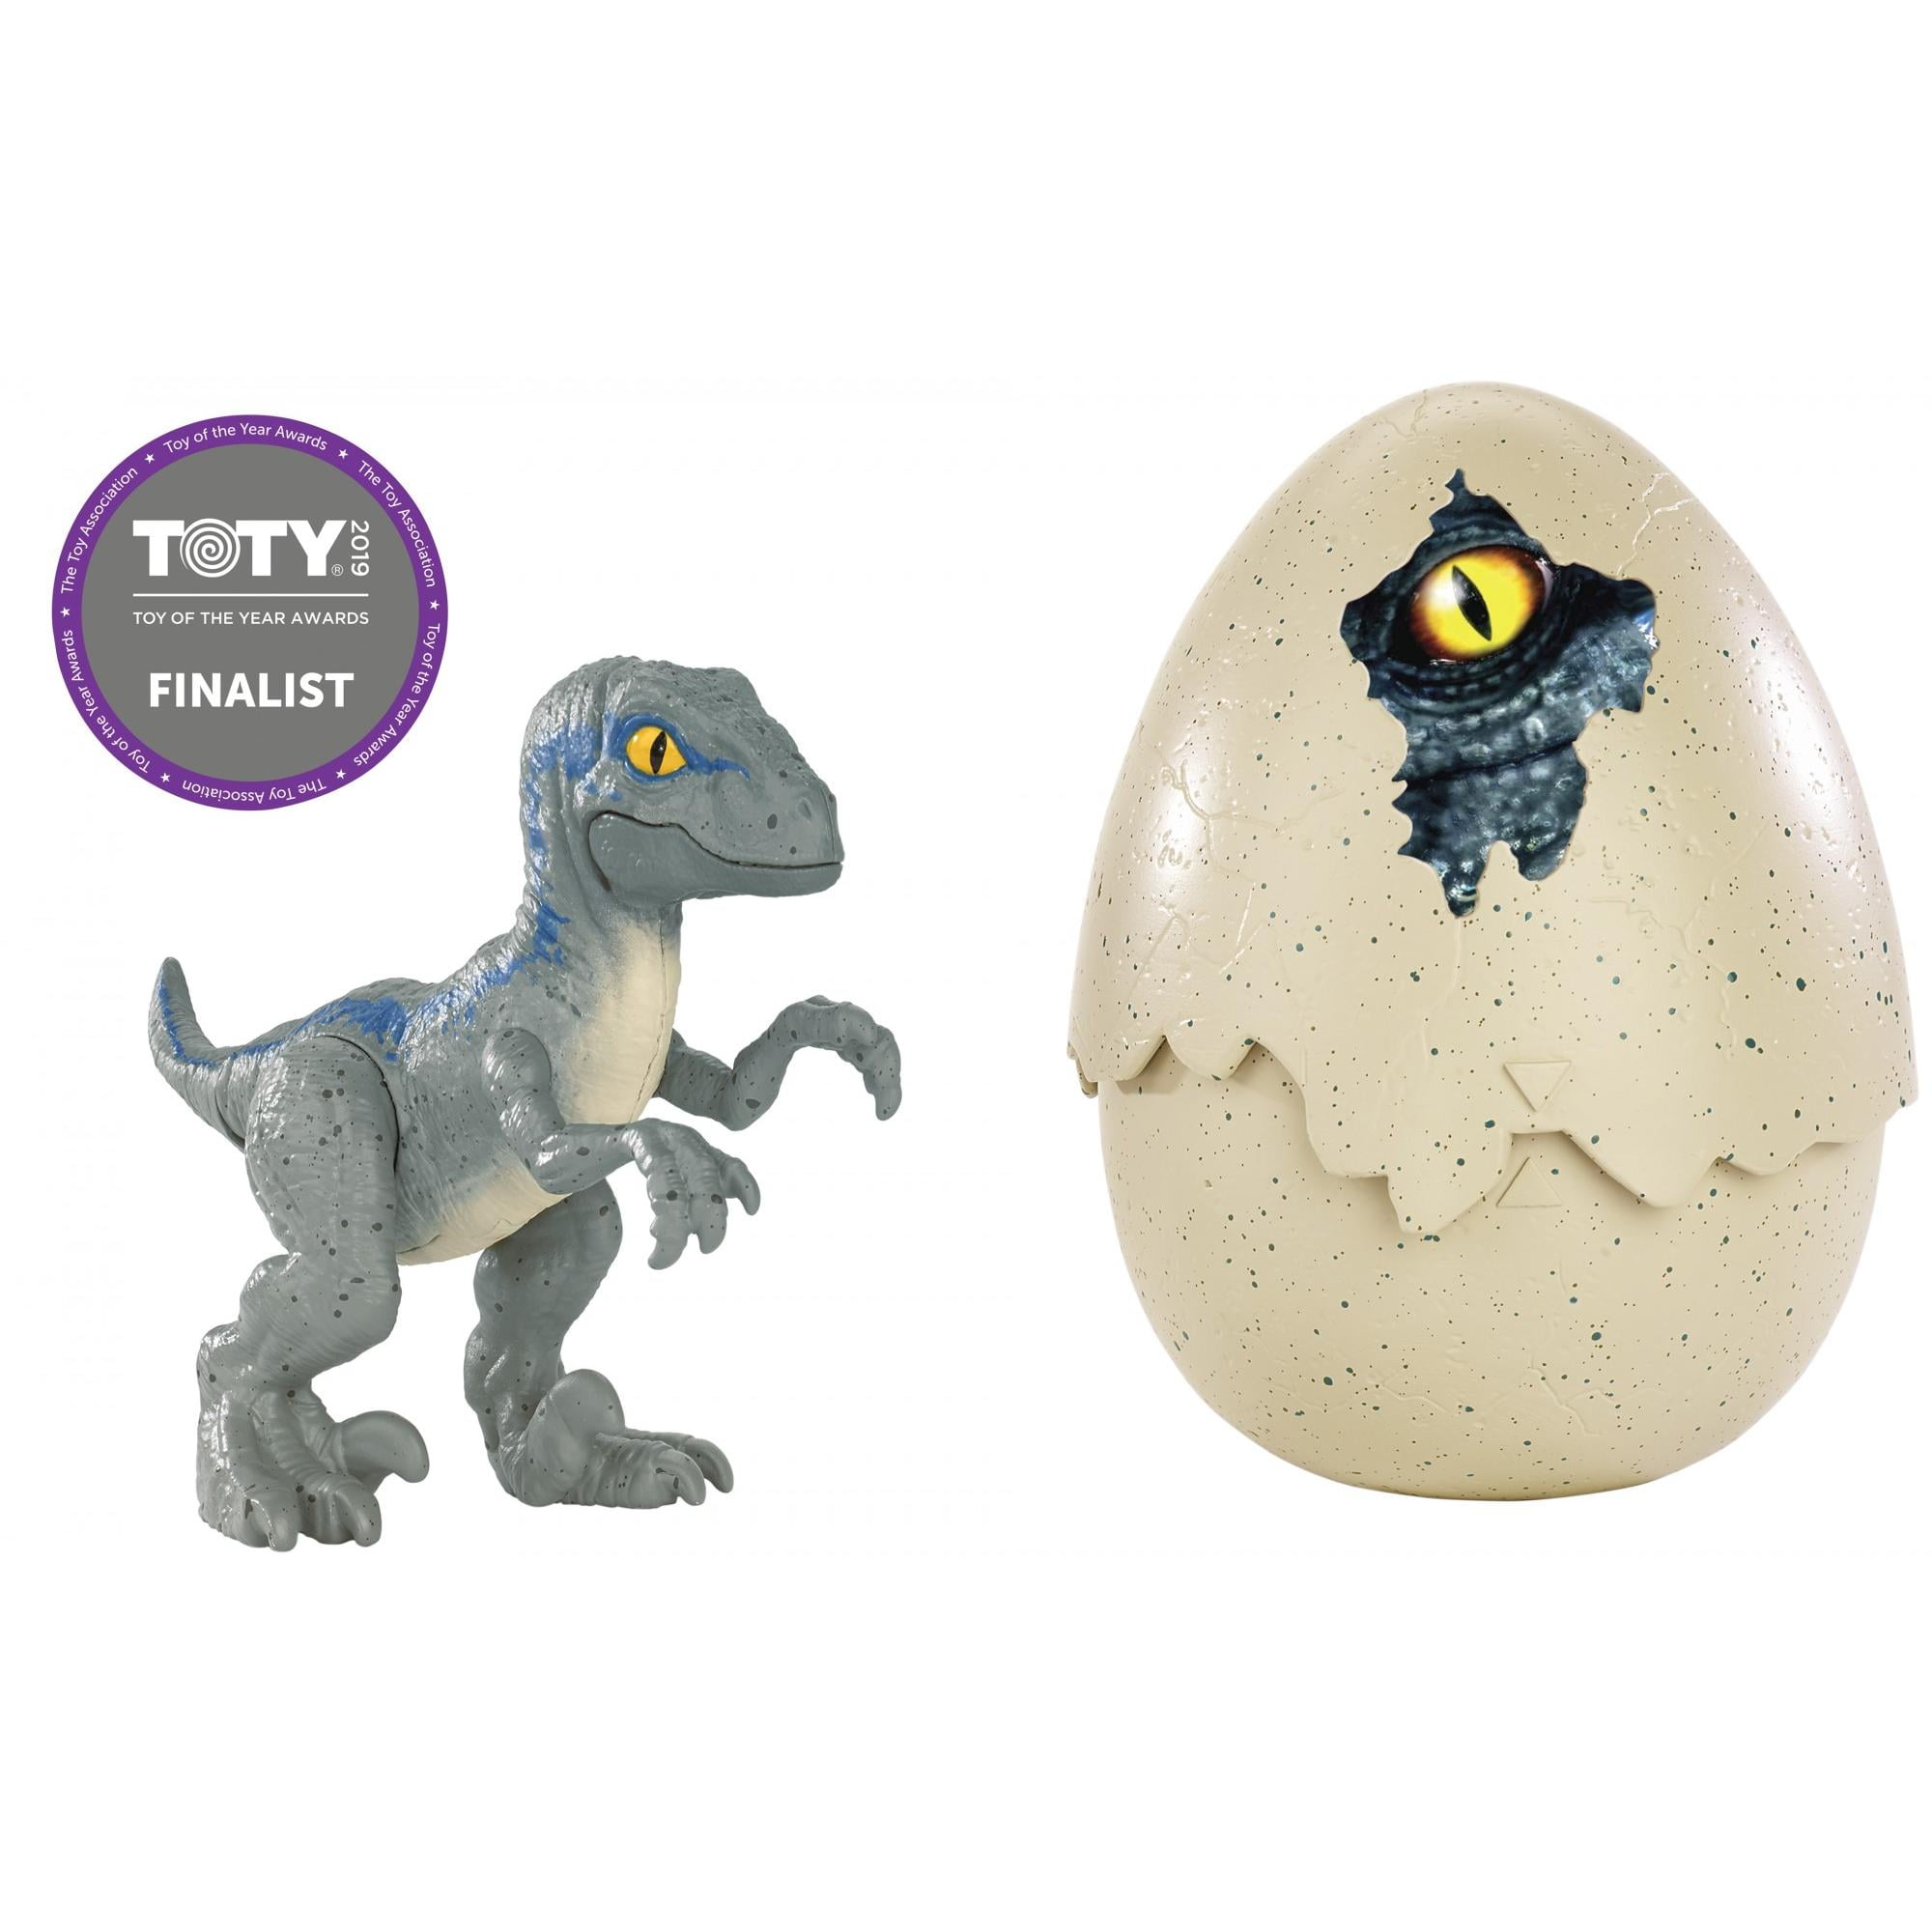 Яйца динозавров купить. Jurassic World динозавр в яйце. Фигурка Велоцираптор Блю. Jurassic World Блю в яйце. Яйца динозавров игрушки мир Юрского периода.